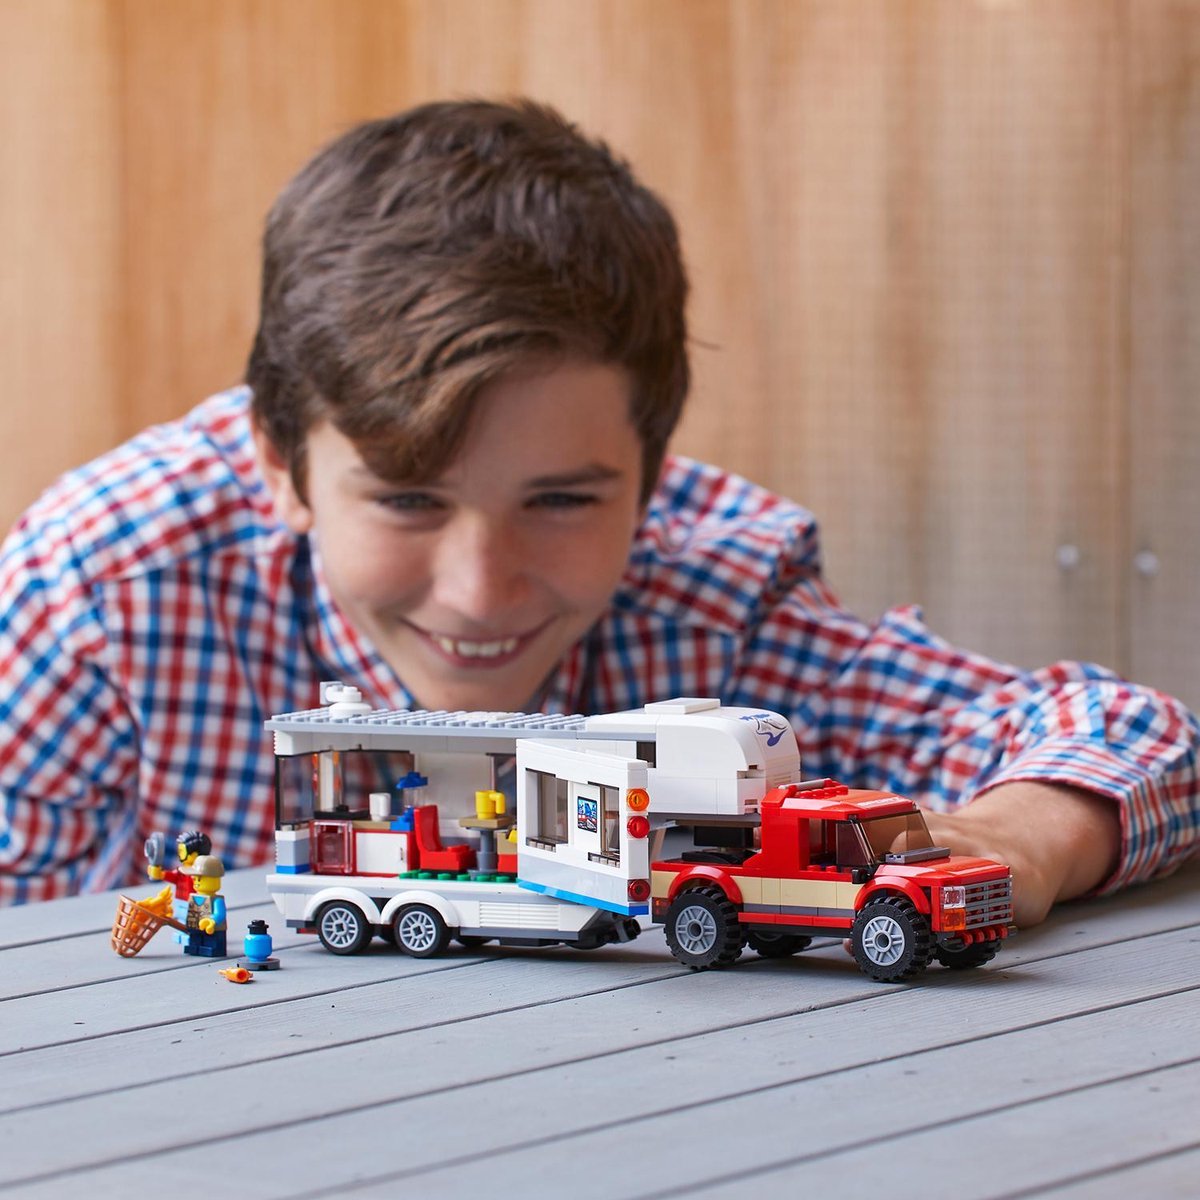 LEGO City Pick-uptruck en Caravan - 60182 | bol.com